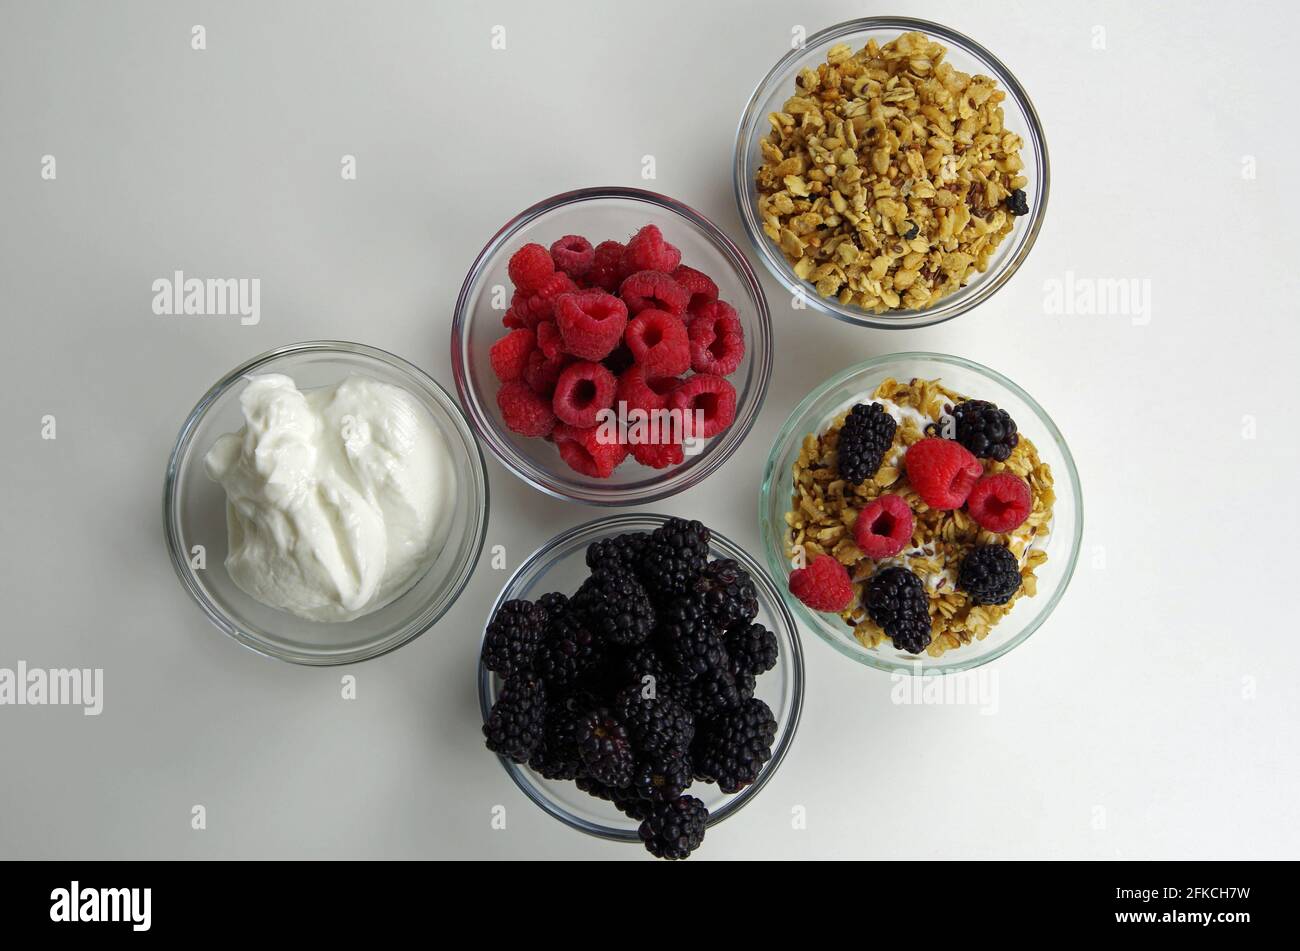 Gesunde Zutaten für die Zubereitung von Snacks oder Mahlzeiten, darunter Joghurt, Himbeeren, Brombeeren und Müsli Stockfoto